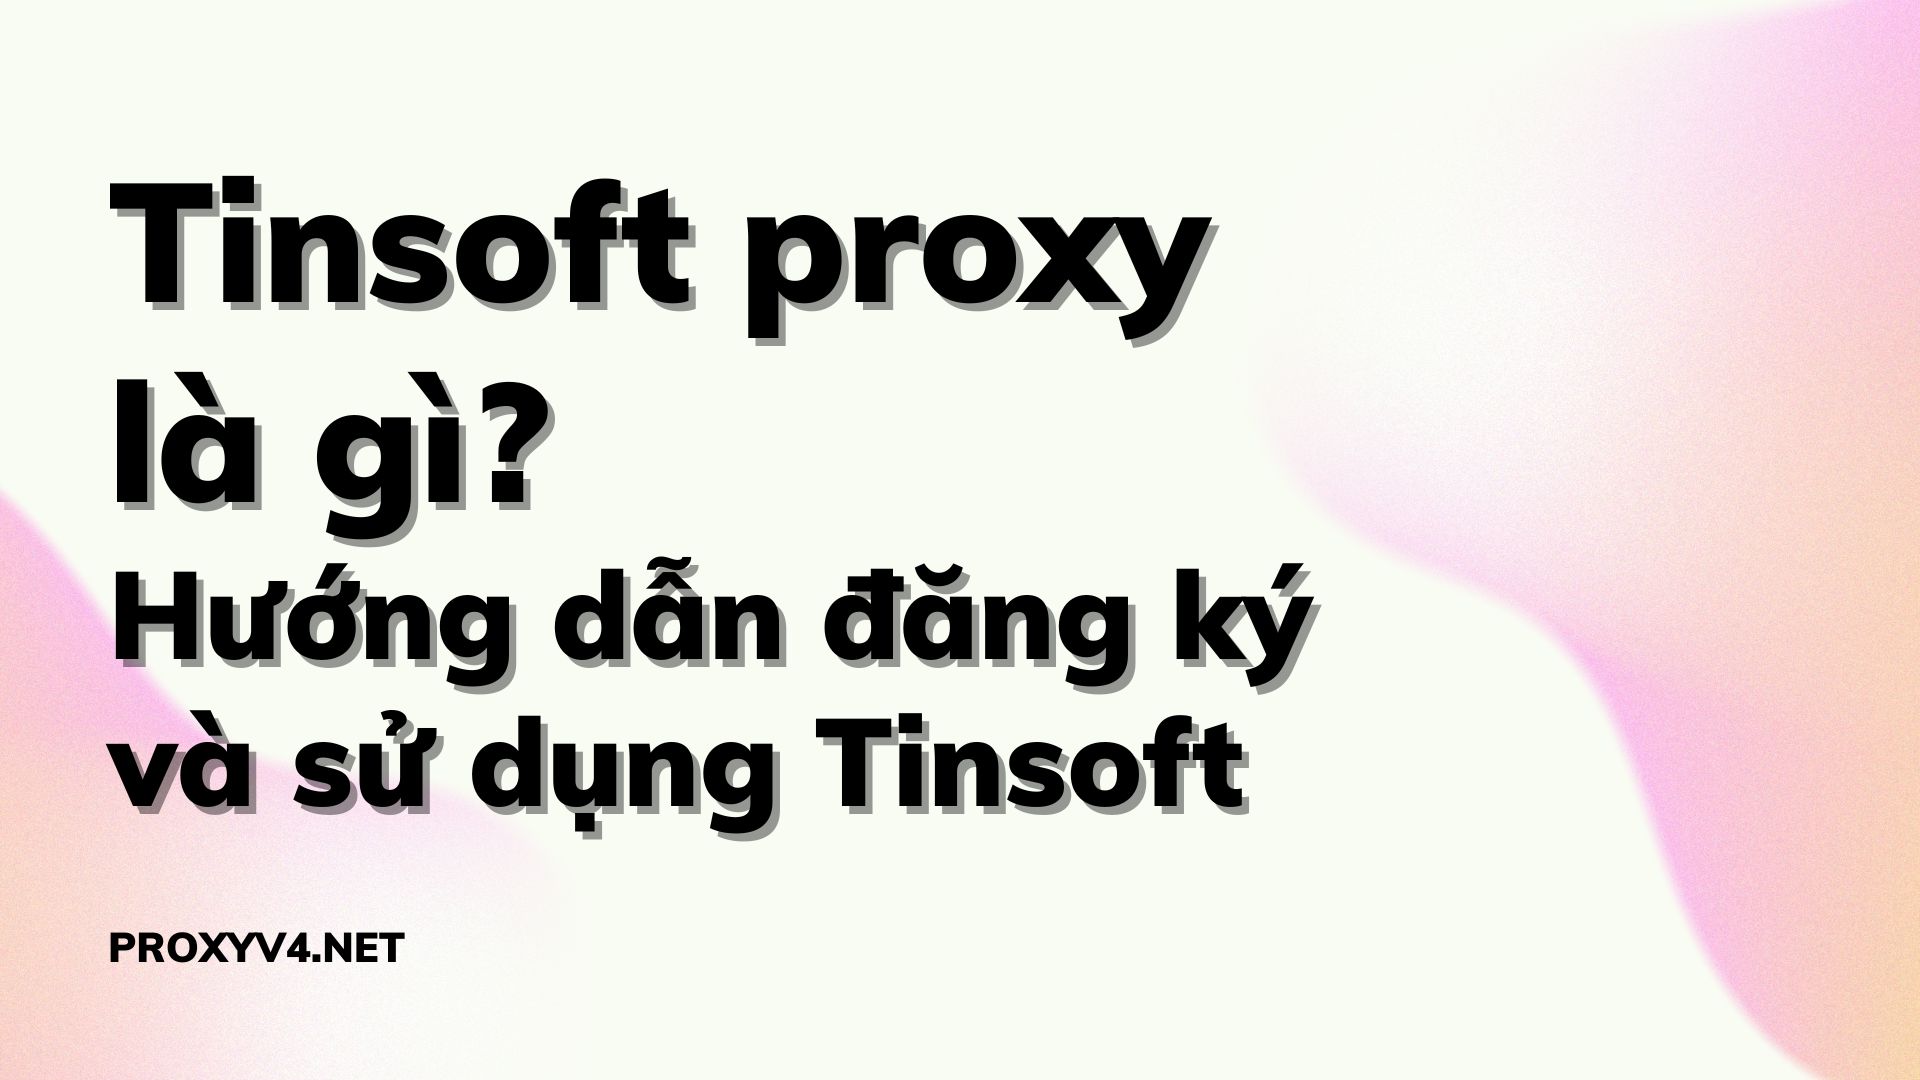 Tinsoft proxy là gì? Hướng dẫn đăng ký và sử dụng Tinsoft